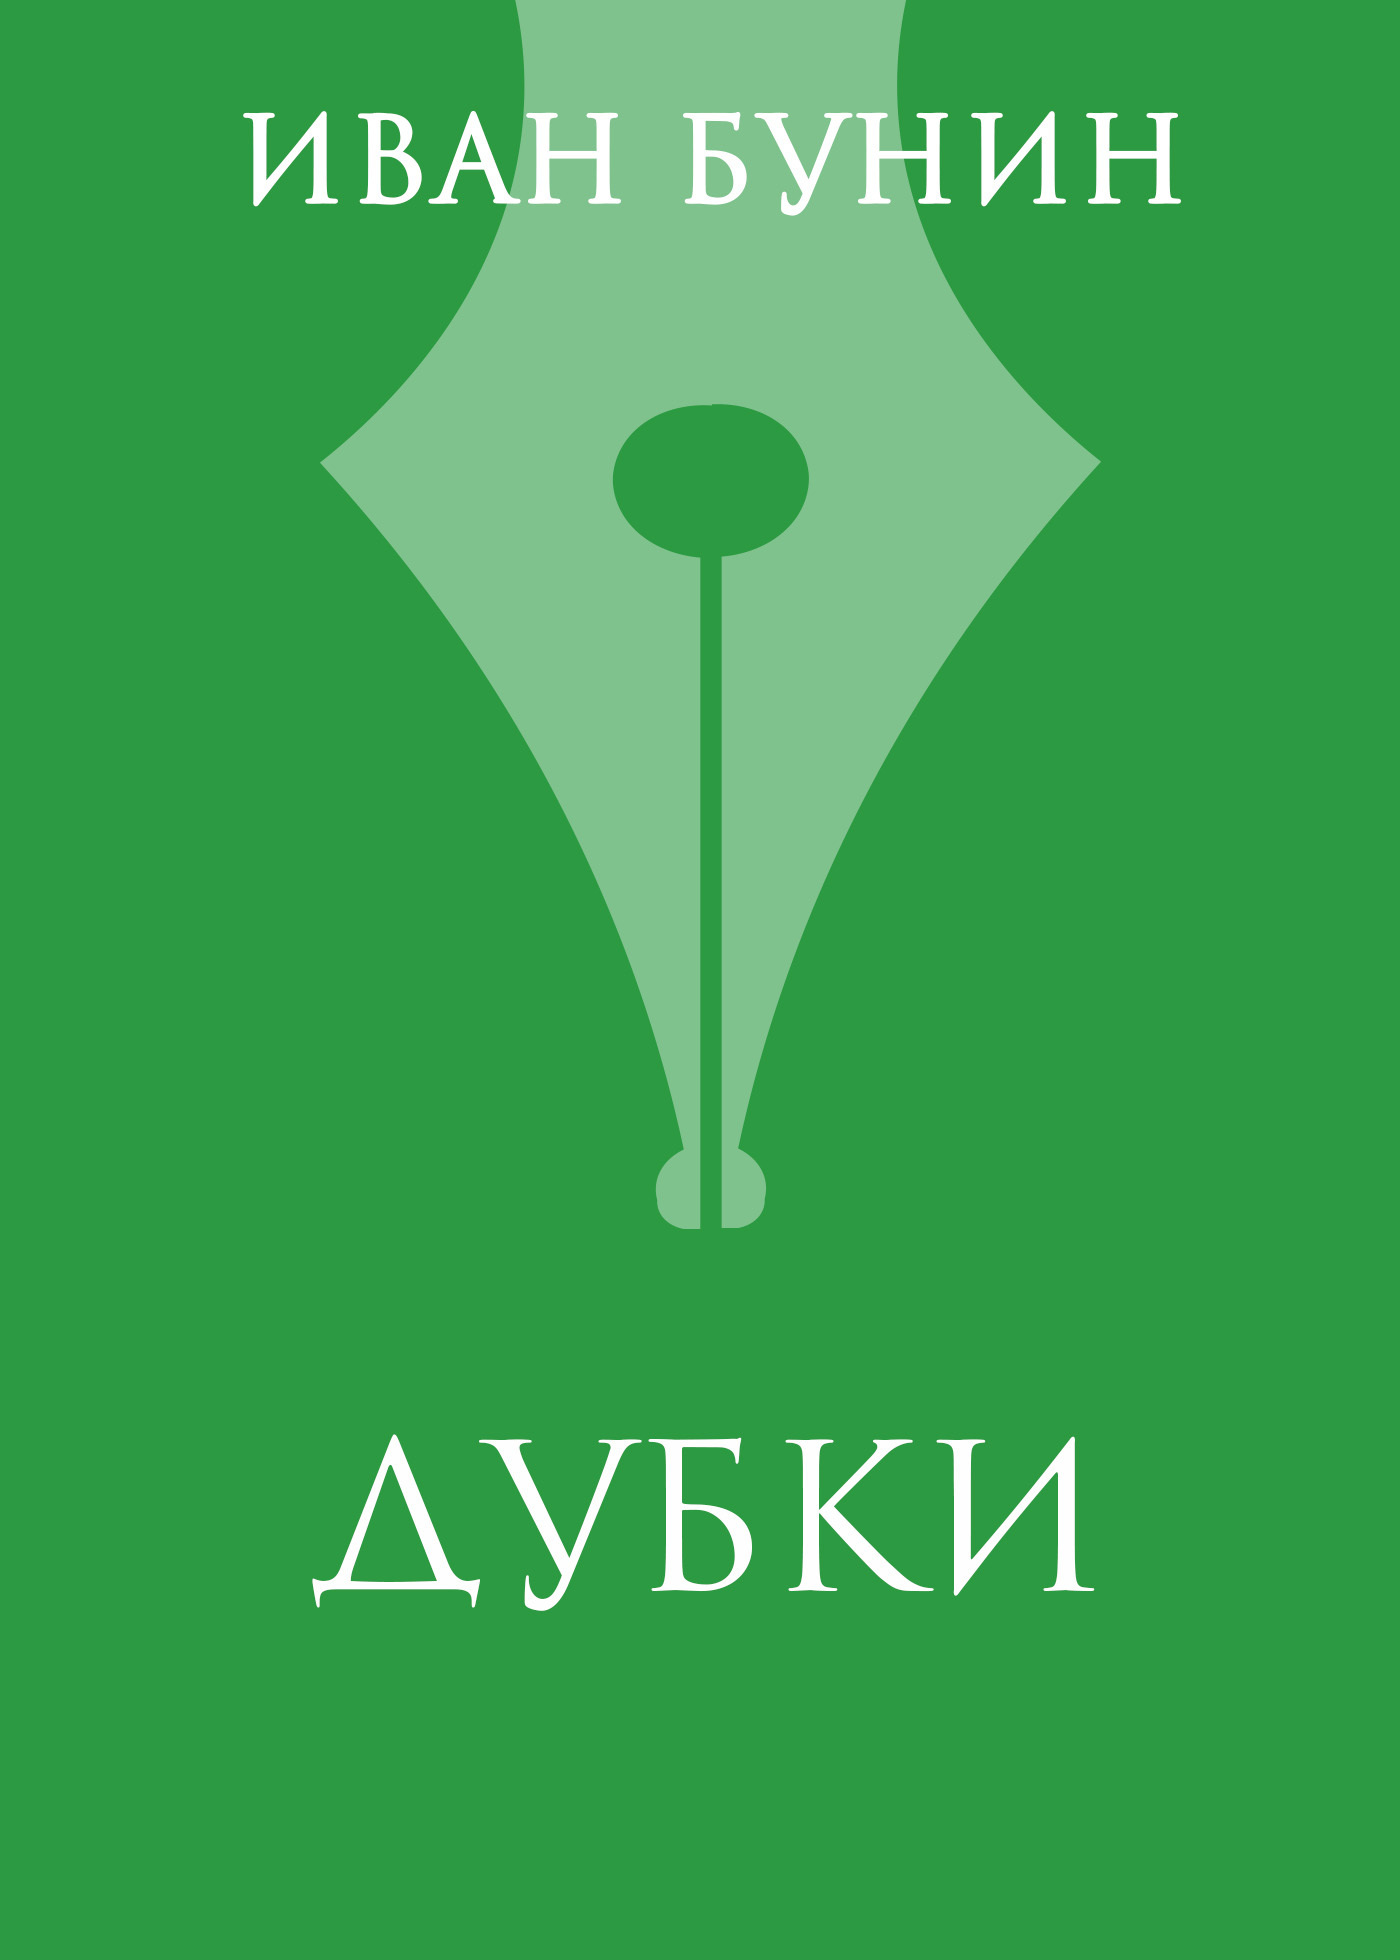 Книга «Дубки» из серии , созданная Иван Бунин, может относится к жанру Русская классика. Стоимость электронной книги «Дубки» с идентификатором 620805 составляет 5.99 руб.